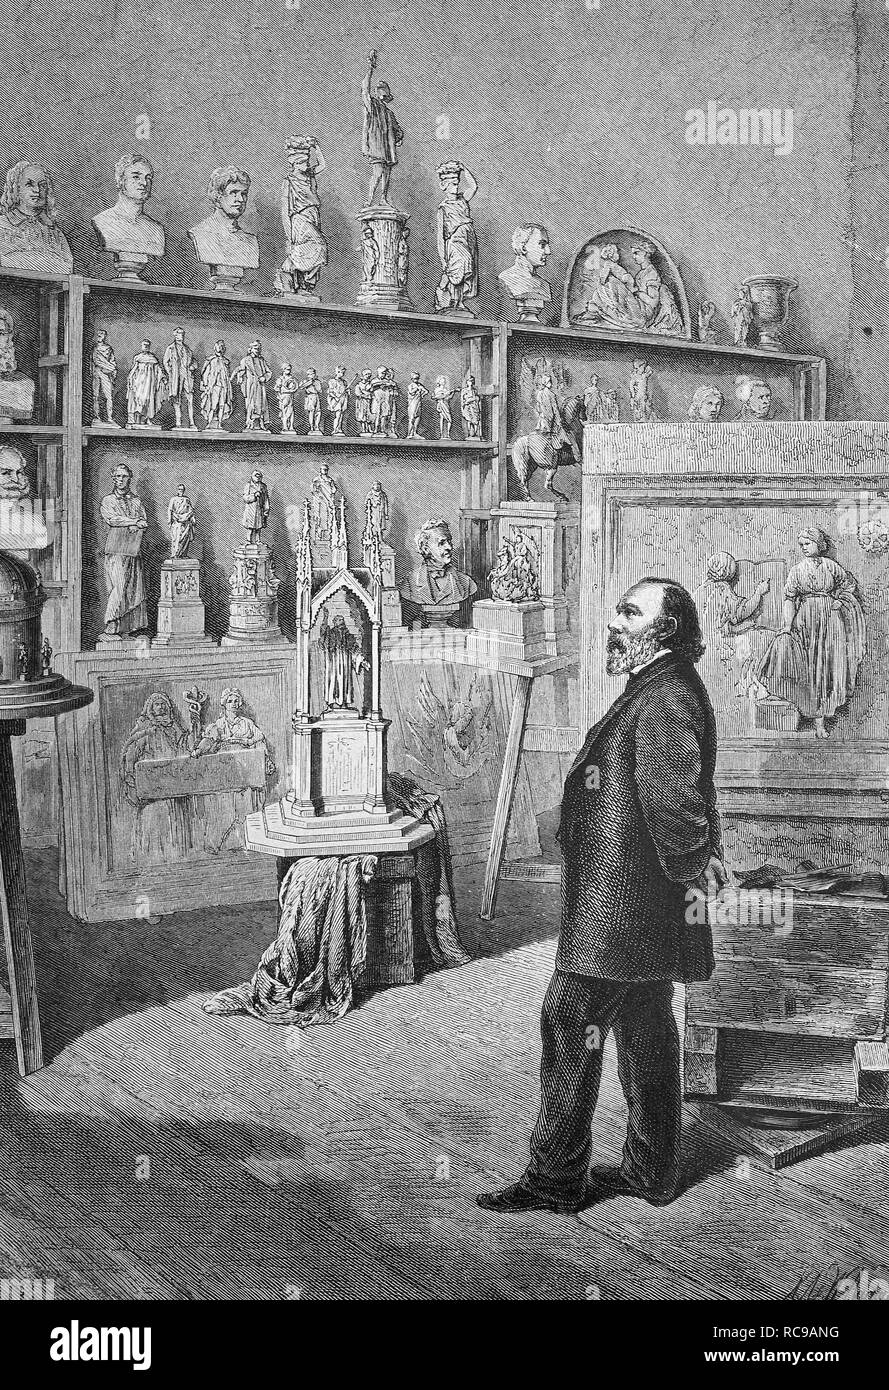 Johann Friedrich Drake, 1805-1882, sculpteur allemand historique, gravure sur bois, ch. 1880 Banque D'Images